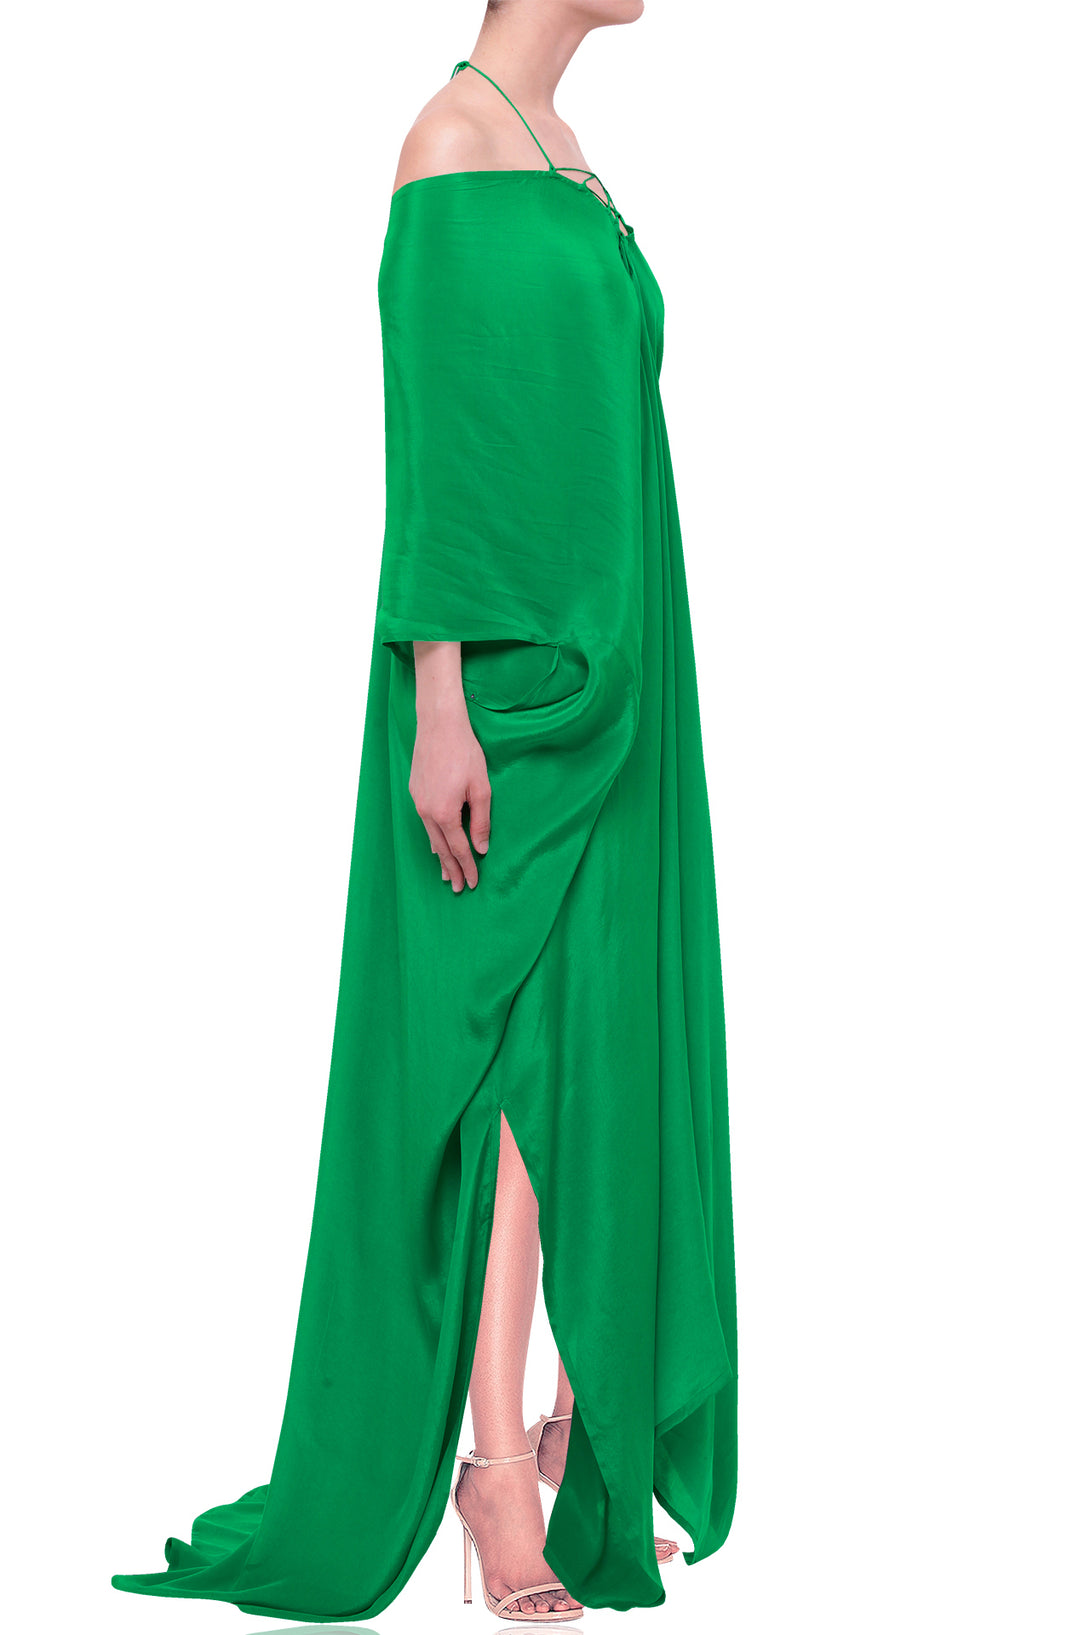 Green Kaftan | Designer Green Kaftan & Green Kaftan Dress - Shahida Parides